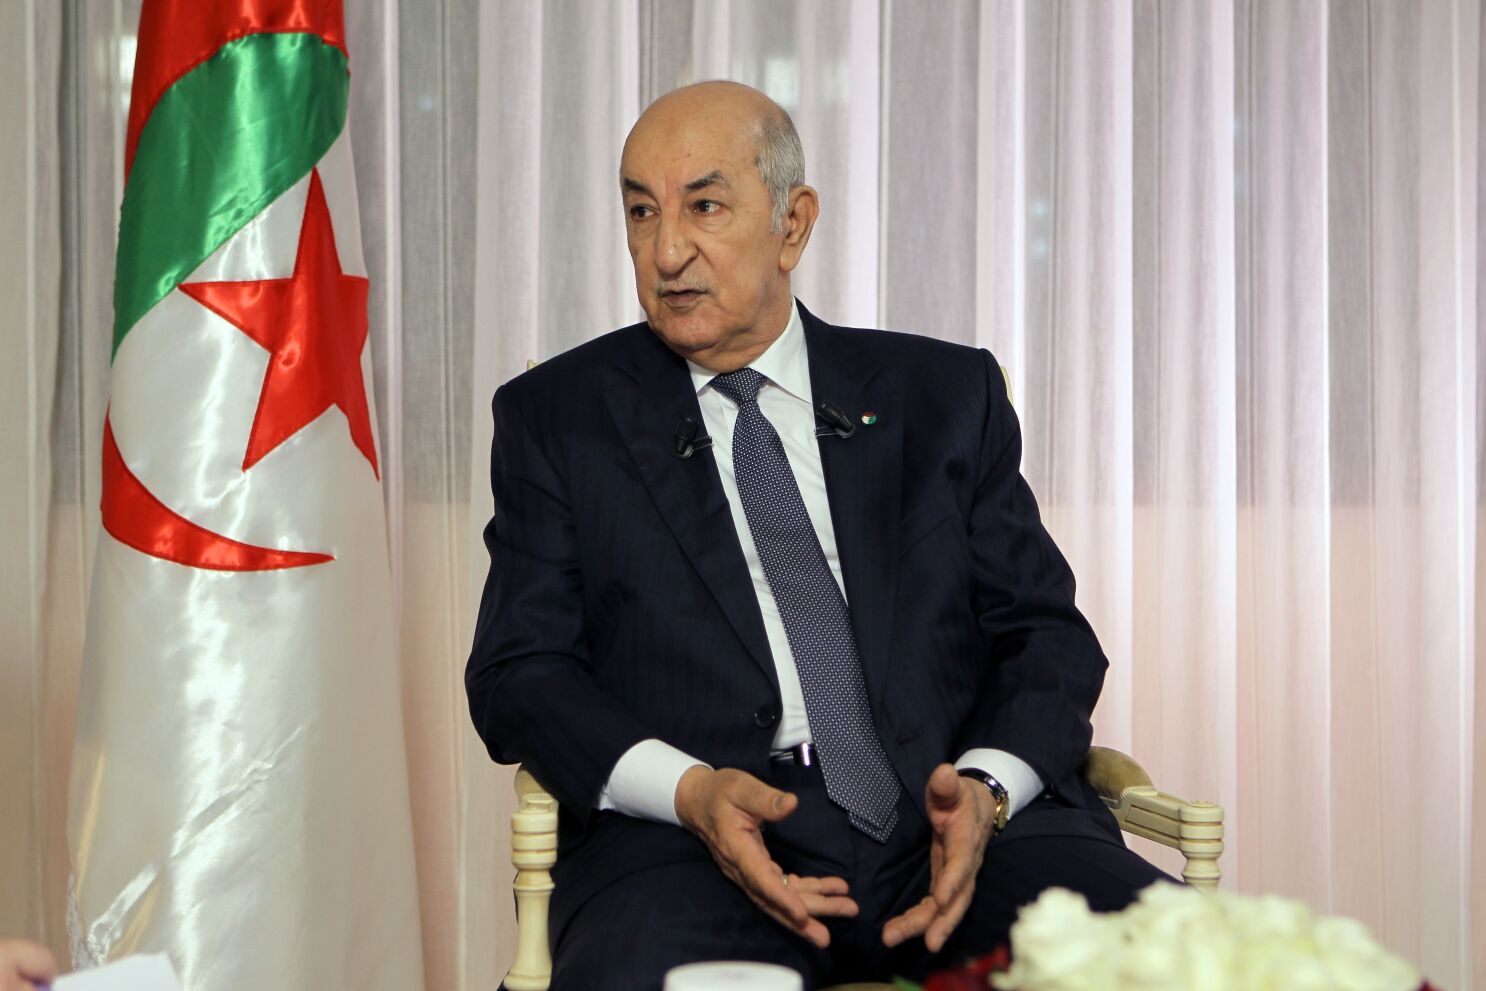 Algérie : La reconnaissance qu’attendaient les médias, refuseront-ils l’offre qui va avec?